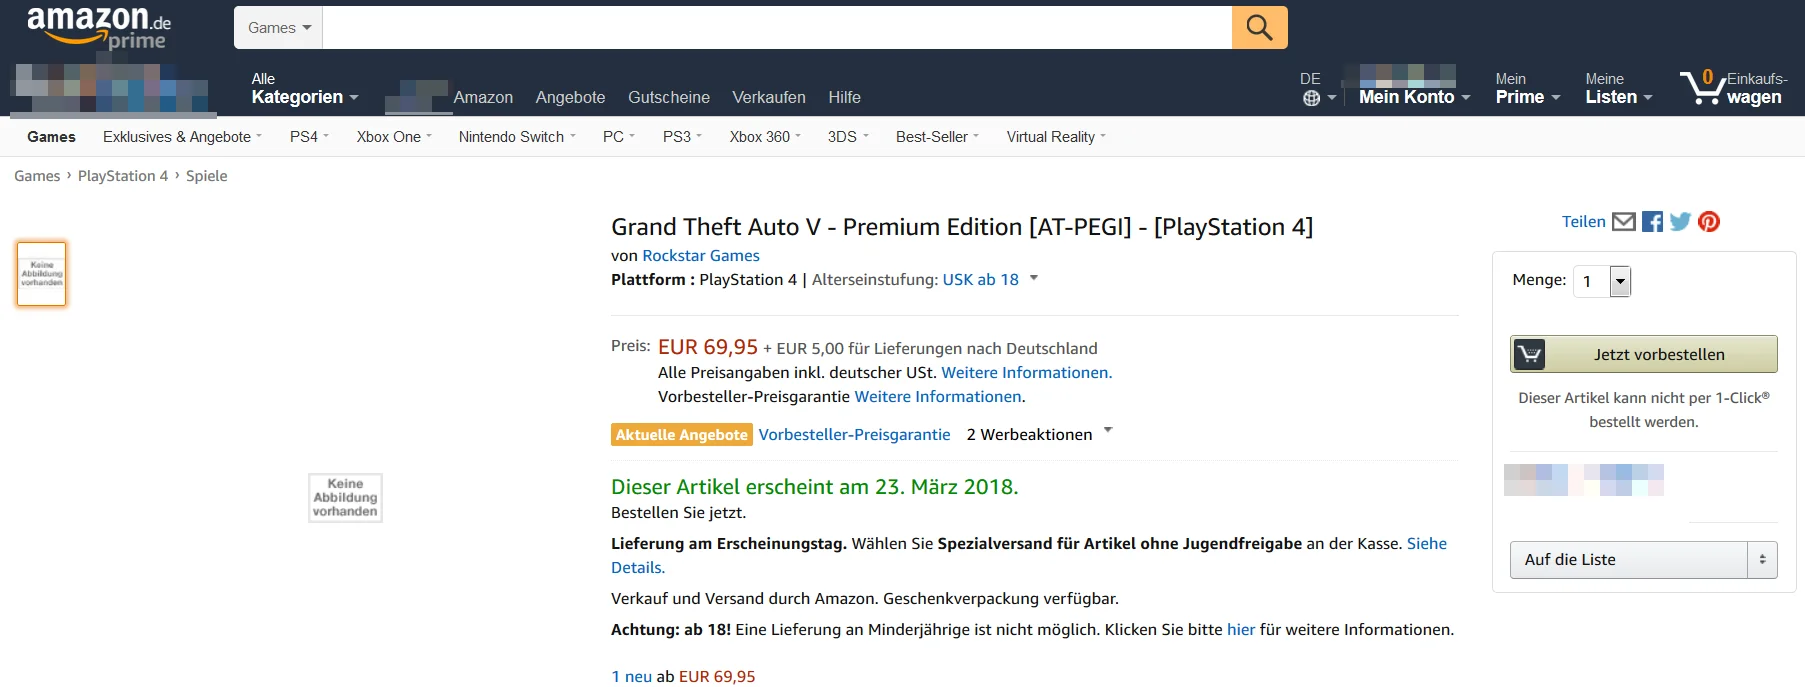 Премиальное переиздание GTA 5 заметили на Amazon. Rockstar все мало! - фото 2